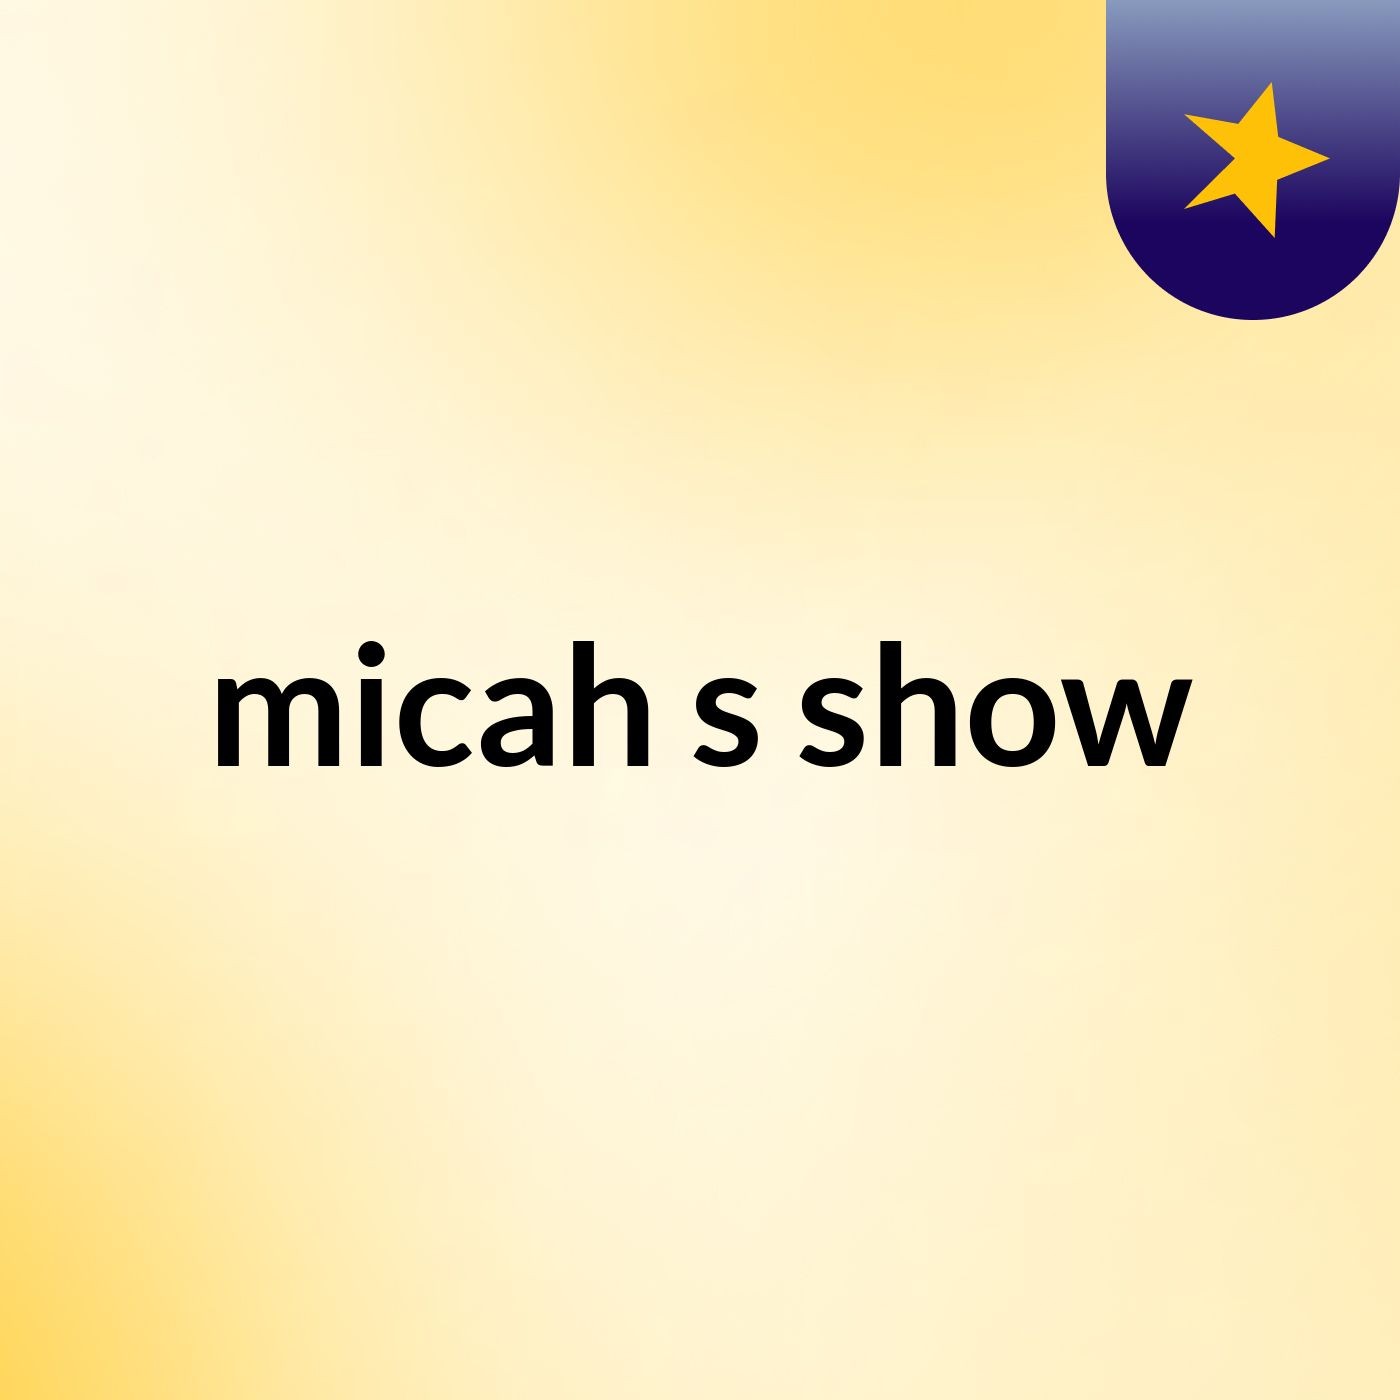 micah's show